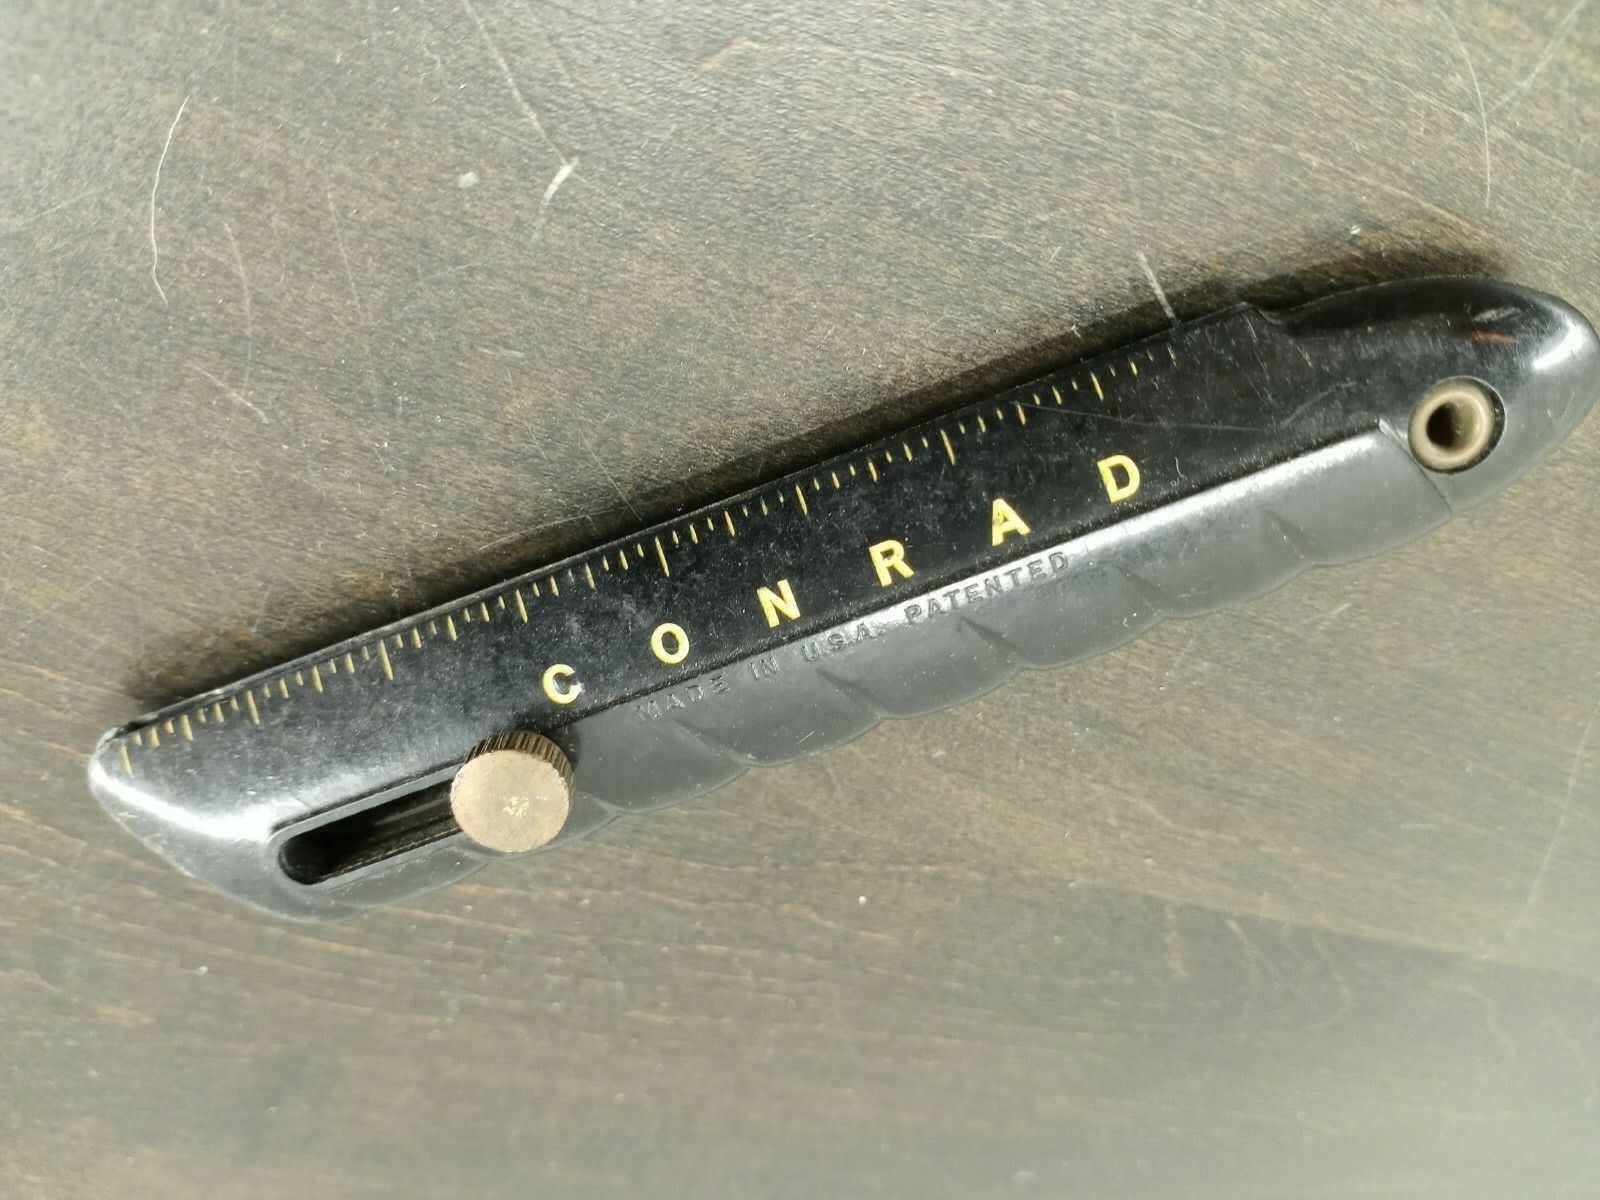 Vintage Conrad Utility Knife - No Blades - See Condition Below